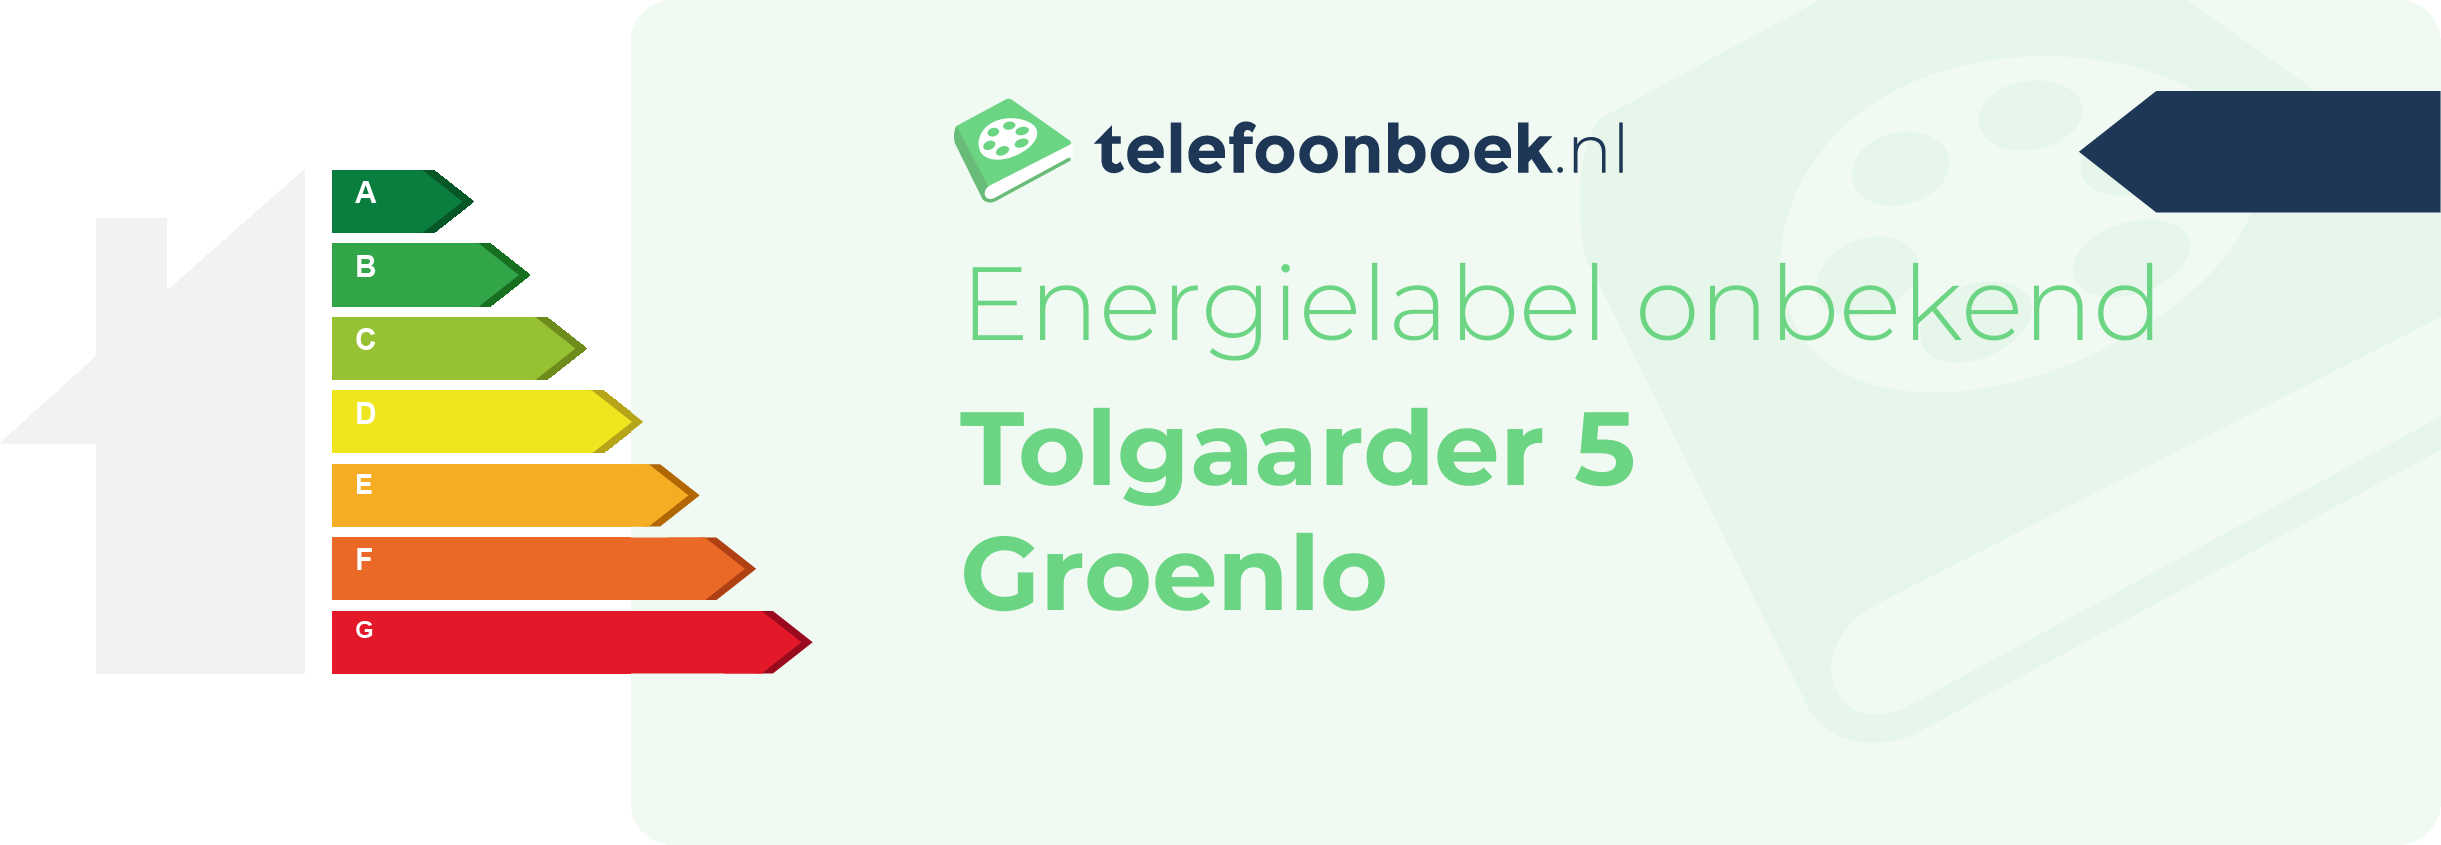 Energielabel Tolgaarder 5 Groenlo